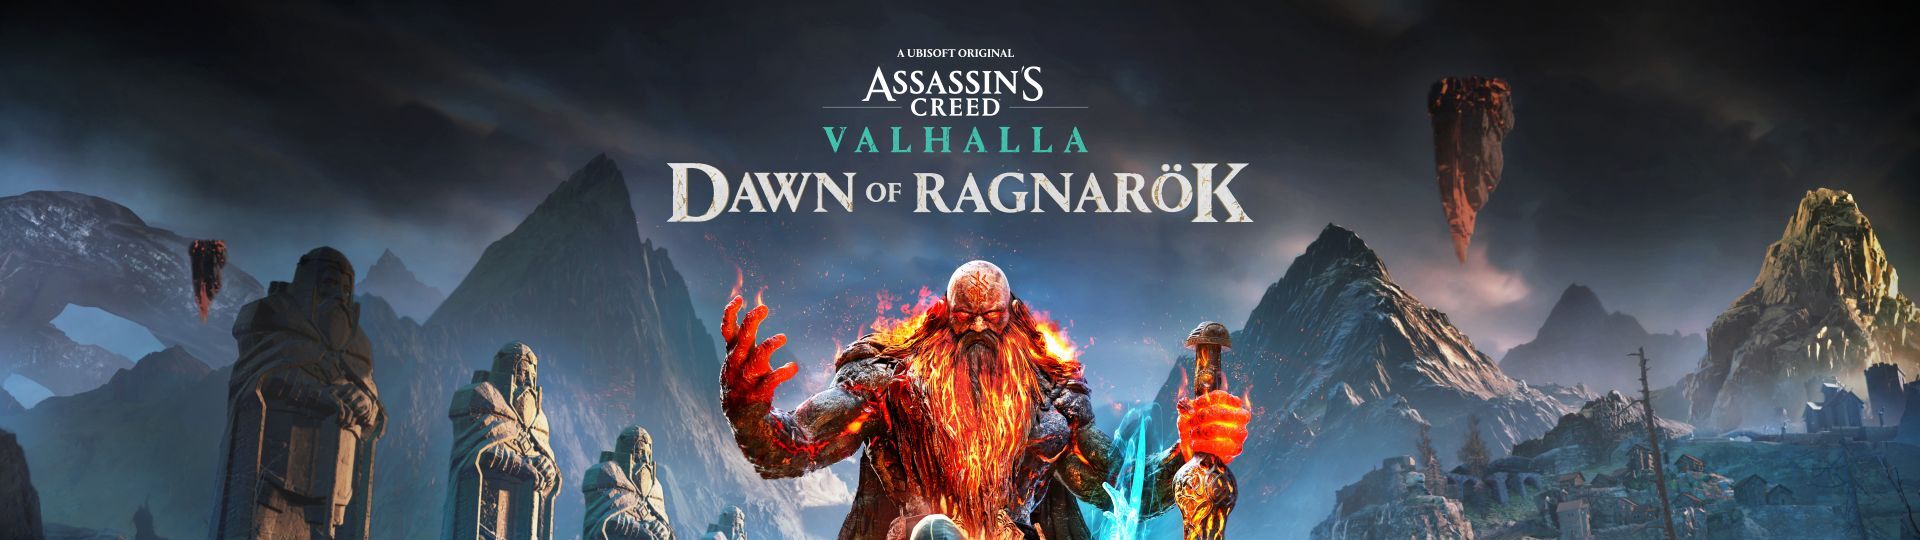 Obří DLC pro AC: Valhalla se bude jmenovat Dawk of Ragnarok | Videa